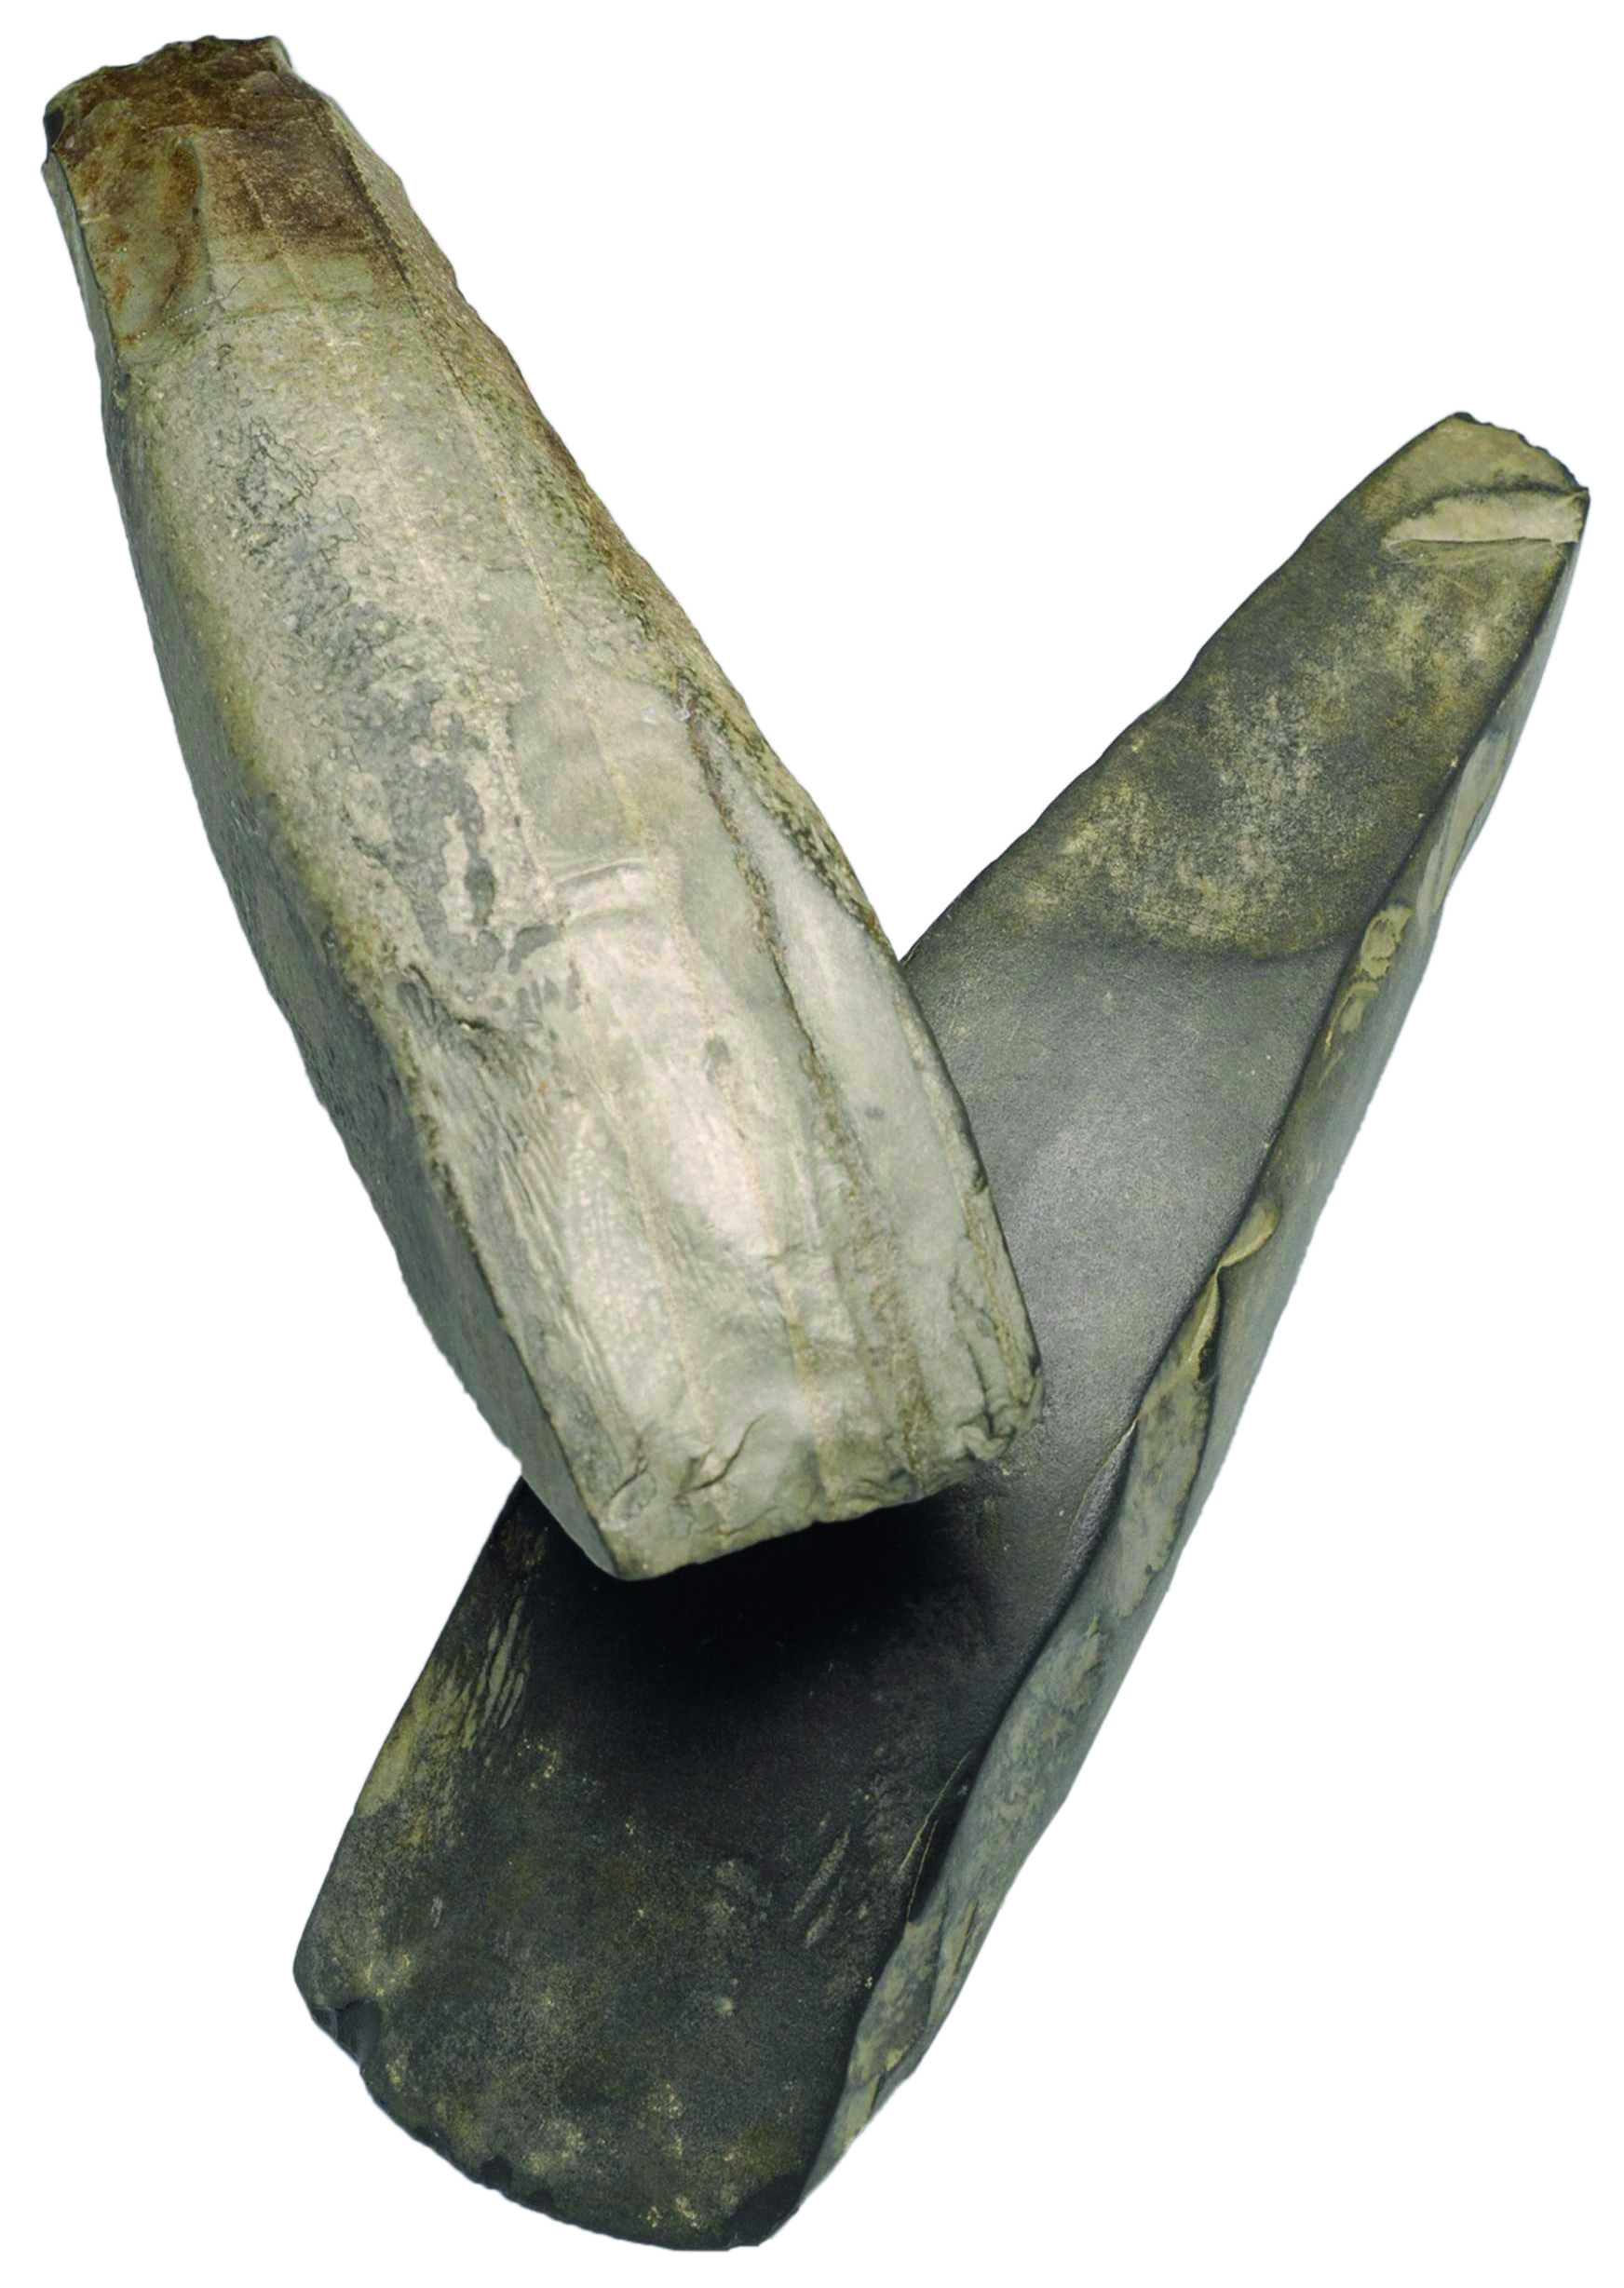 Deux grandes lames d’herminette en pélite-quartz issues des carrières de Plancher-les-Mines. Musées de Montbéliard. © P. Pétrequin